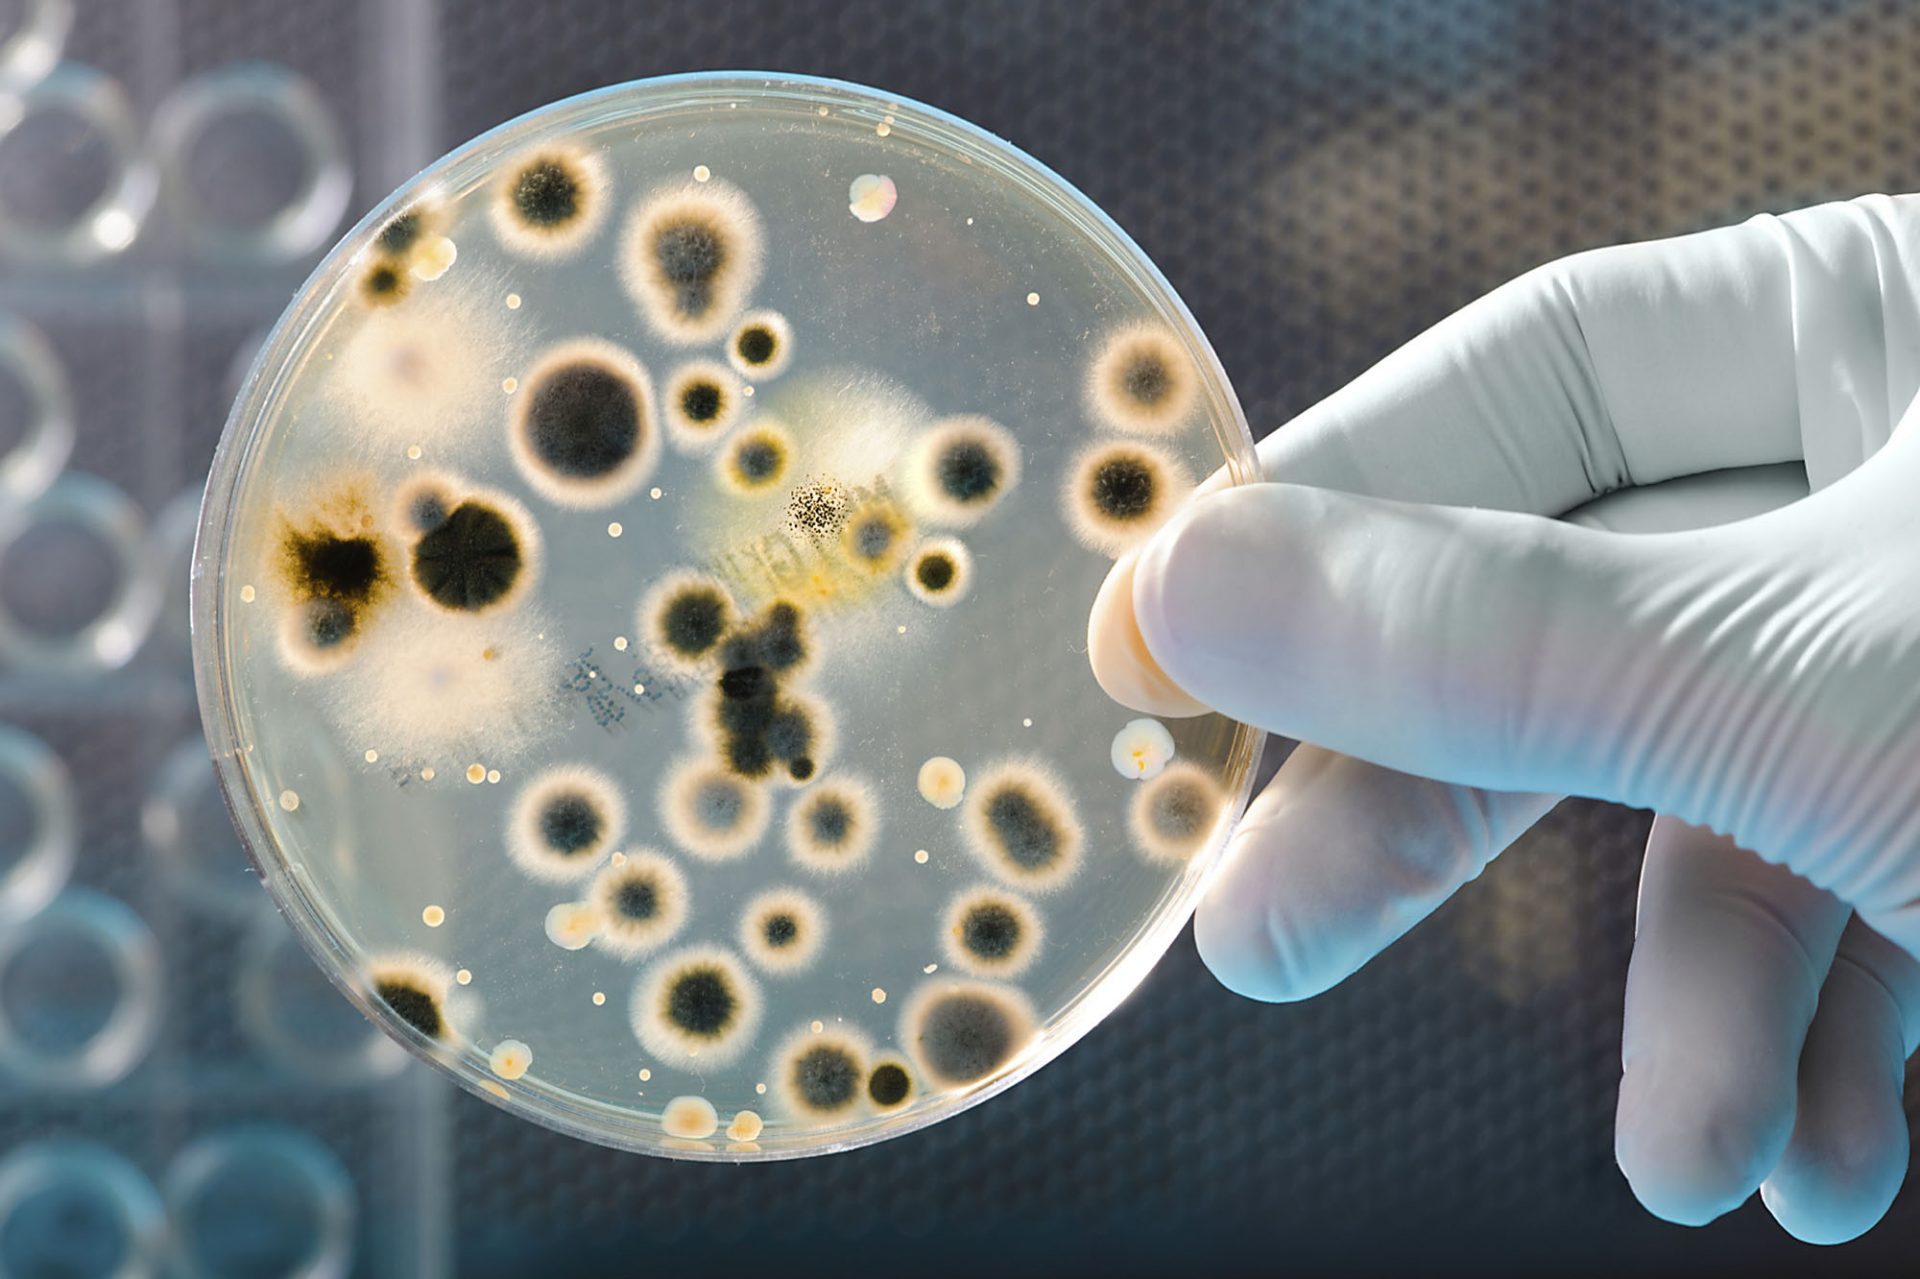 صورة تنتج بكتيريا أشير شيا كولاي في امعاء الانسان